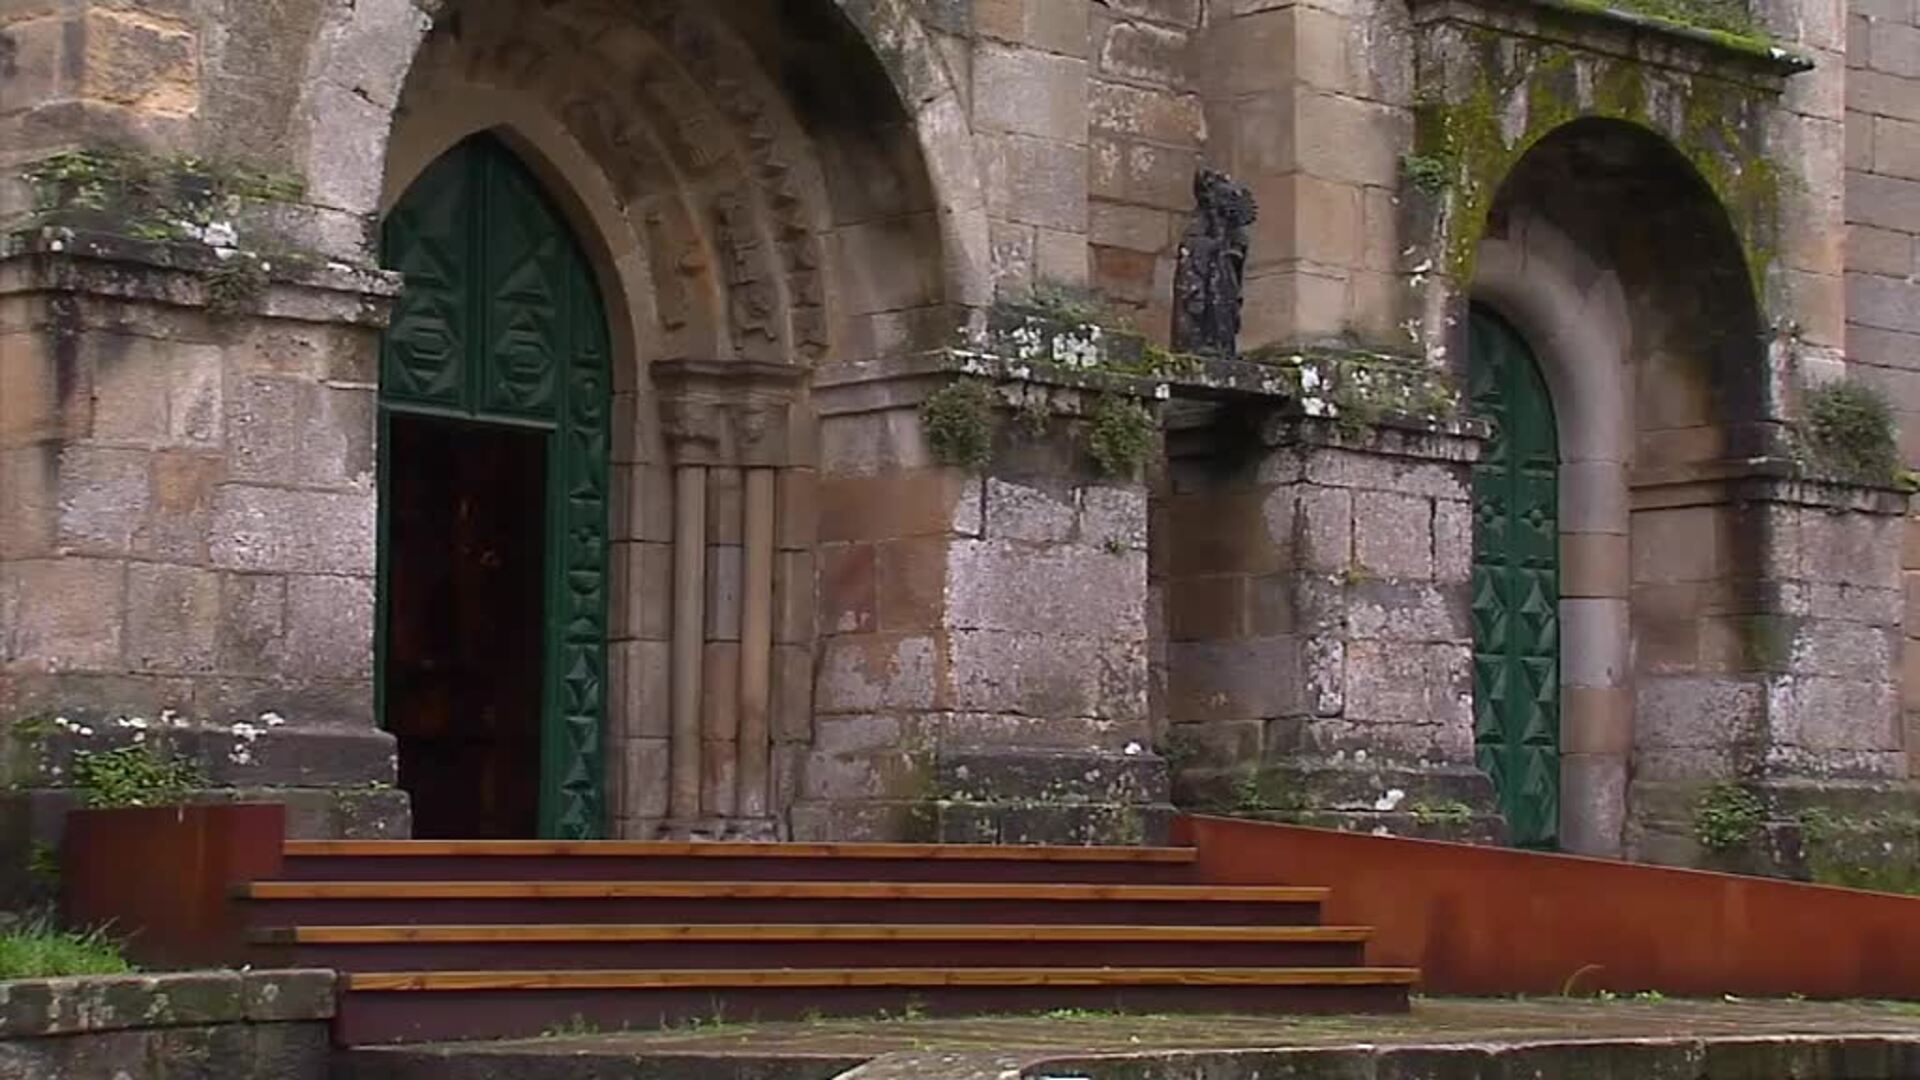 Los balones perdidos tras el muro de un convento de Pontevedra vuelven con sus dueños